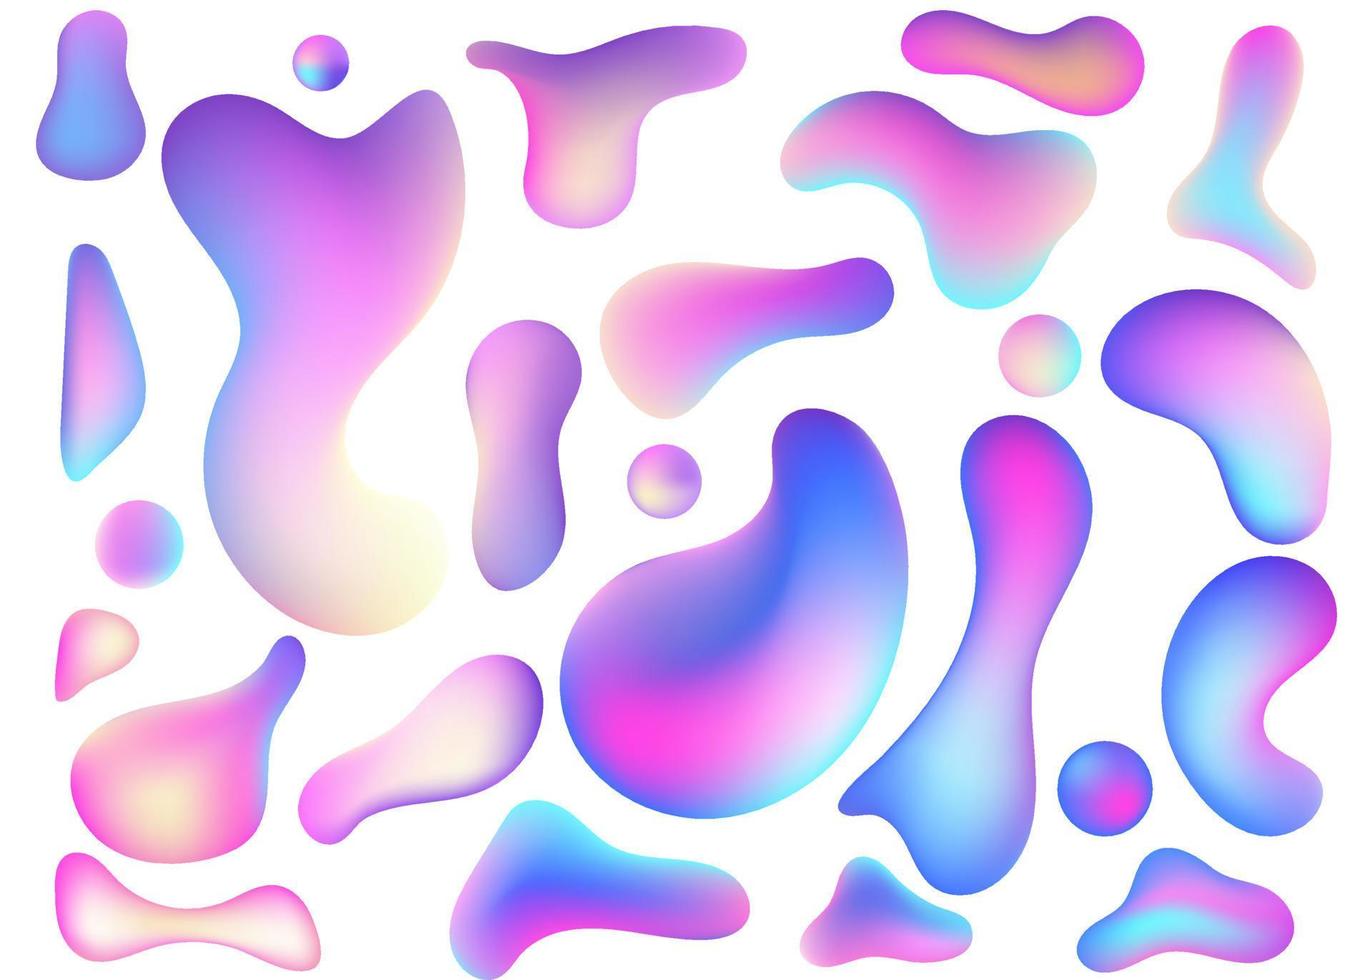 flüssiger fluss pastellviolett, blauer 3d-neon-lavalampen-vektorgeometrischer satz für banner-, karten- oder ui-design. Verlaufsgitterblase in Form eines Wellentropfens. flüssige bunte abstrakte formen. vektor